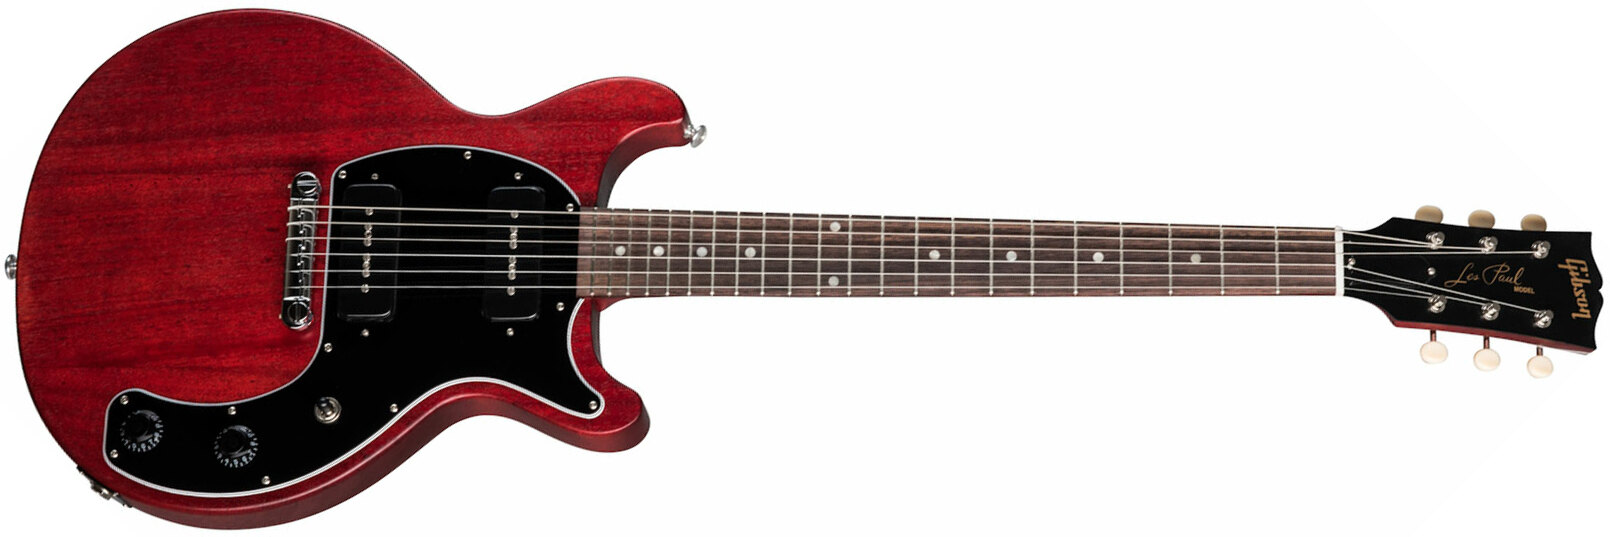 Gibson Les Paul Special Tribute Dc Modern 2p90 Ht Rw - Worn Cherry - Guitare Électrique Double Cut - Main picture